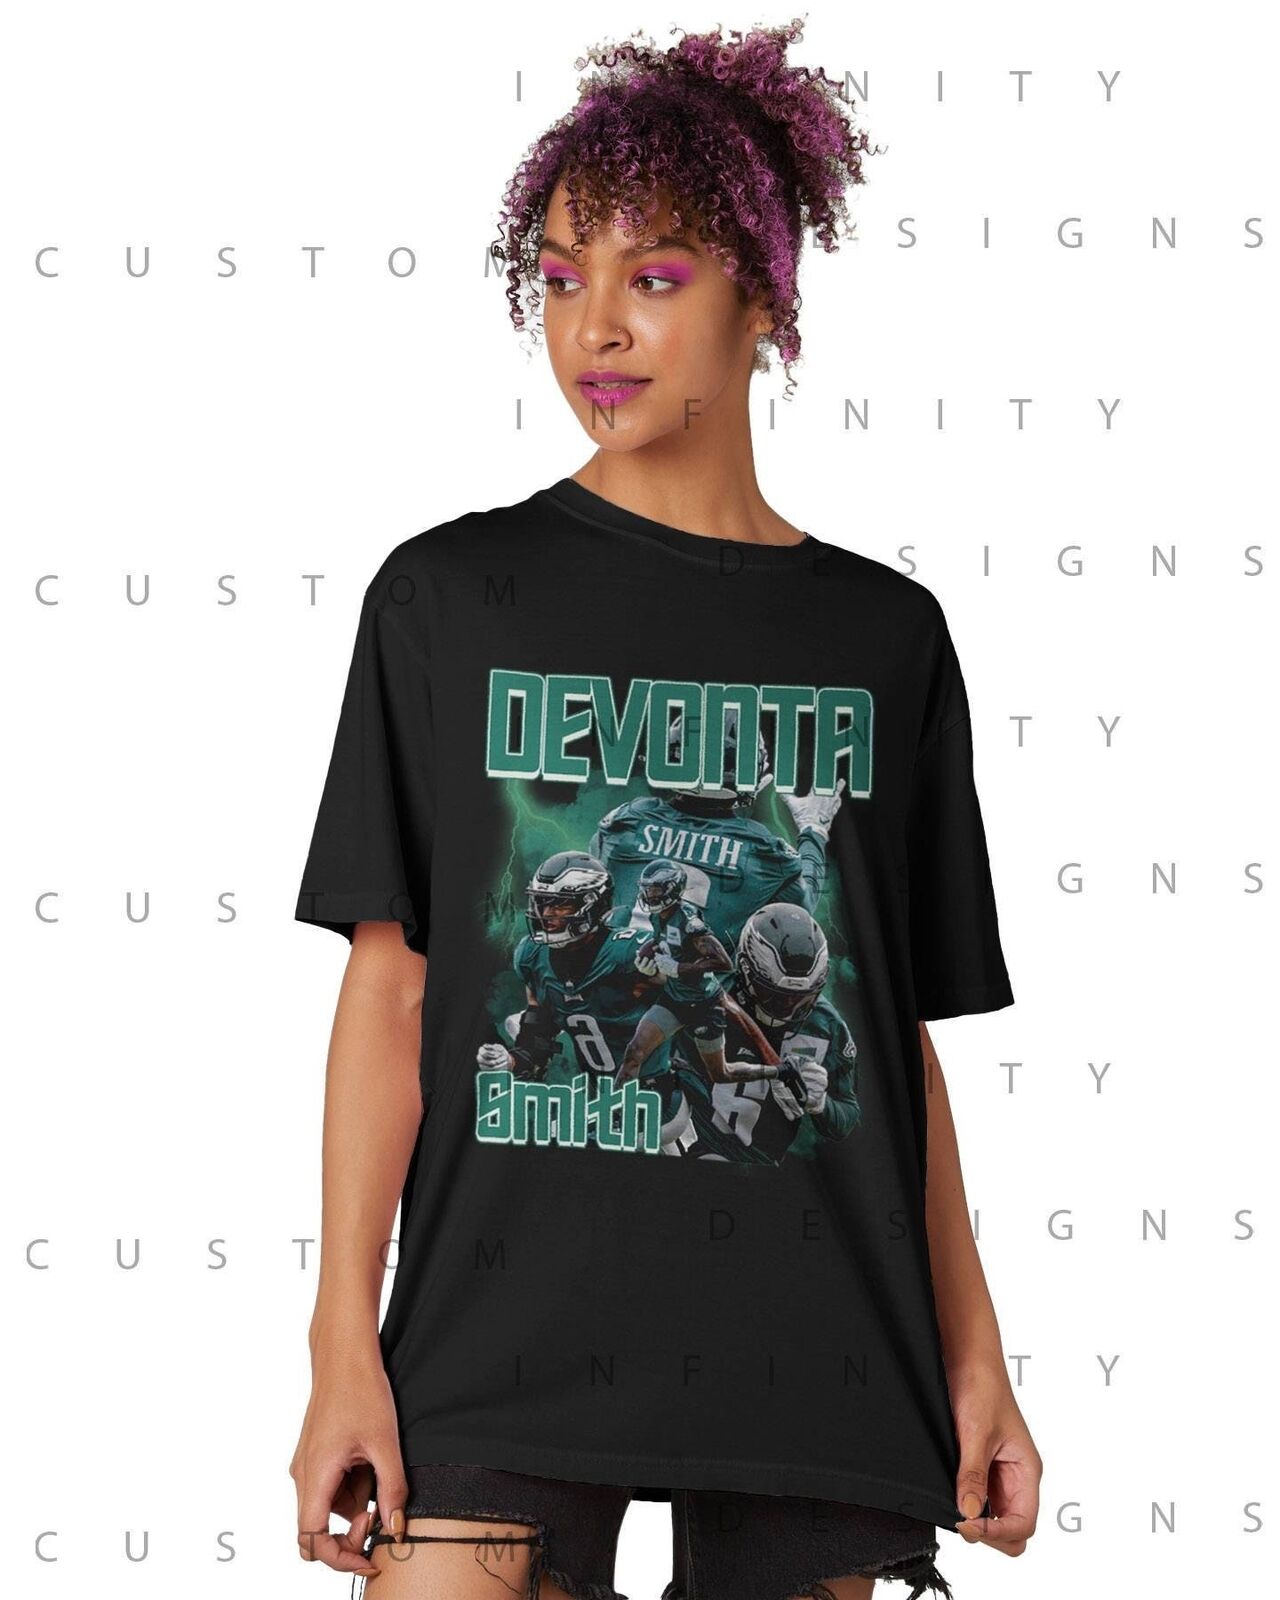 HOT SALE DeVonta Smith Retro Shirt, Vintage Graphic Unisex T-Shirt Size S-5XL